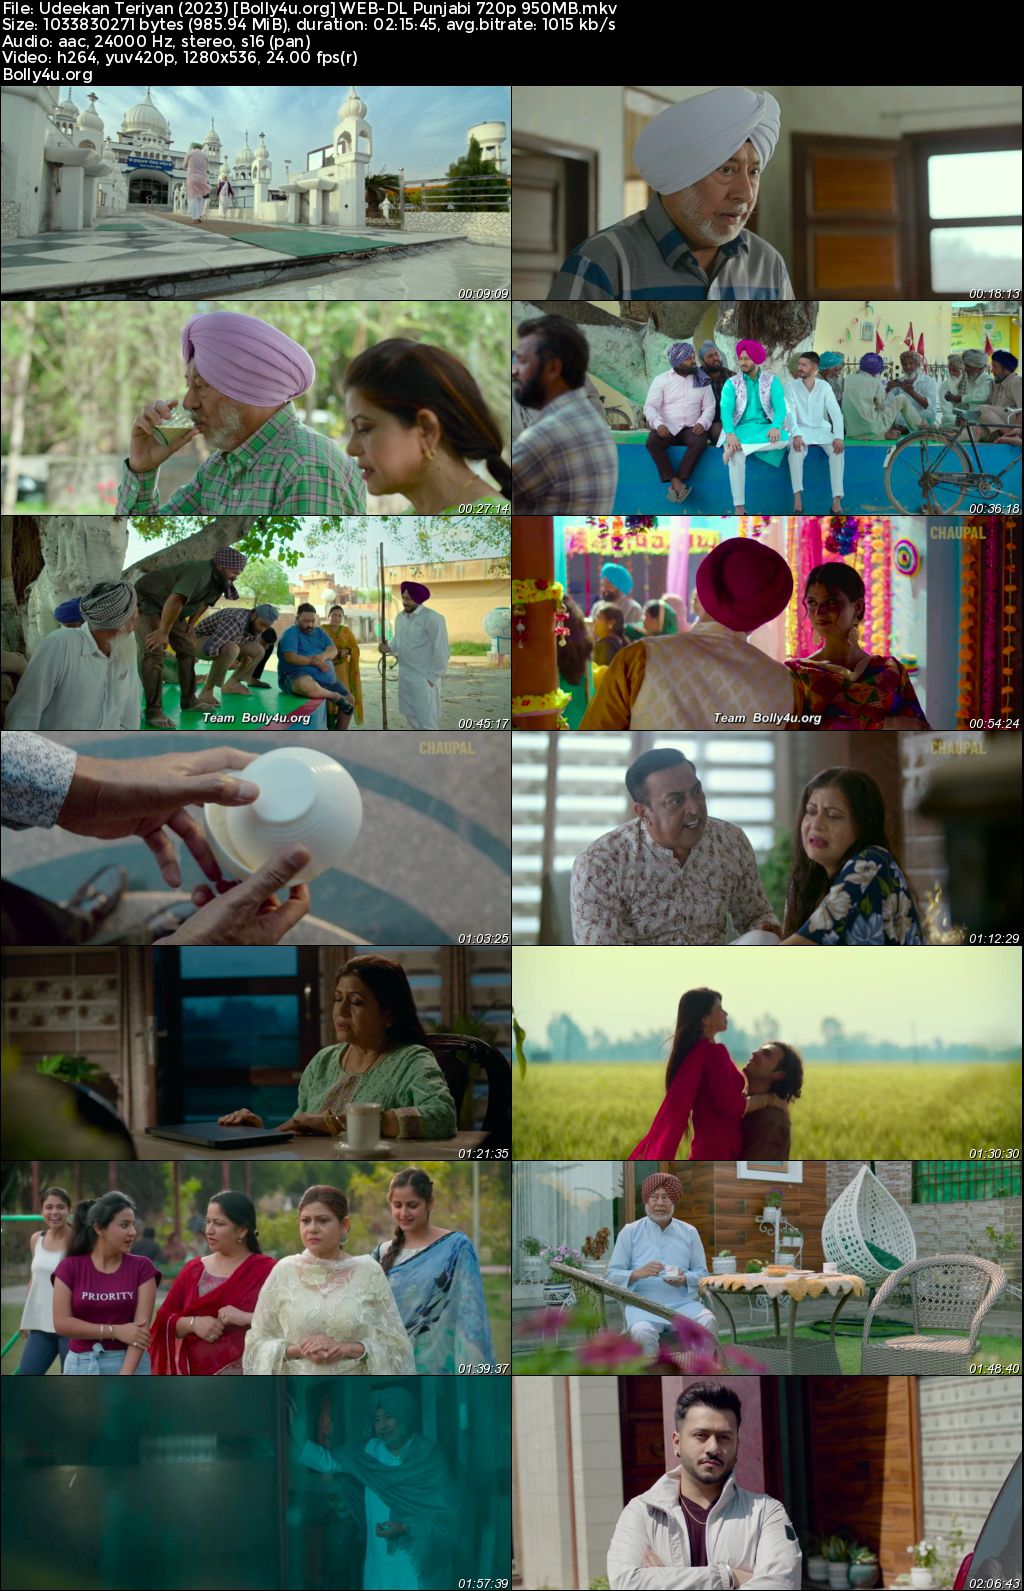 Udeekan Teriyan 2023 WEB-DL Punjabi Full Movie Download 1080p 720p 480p